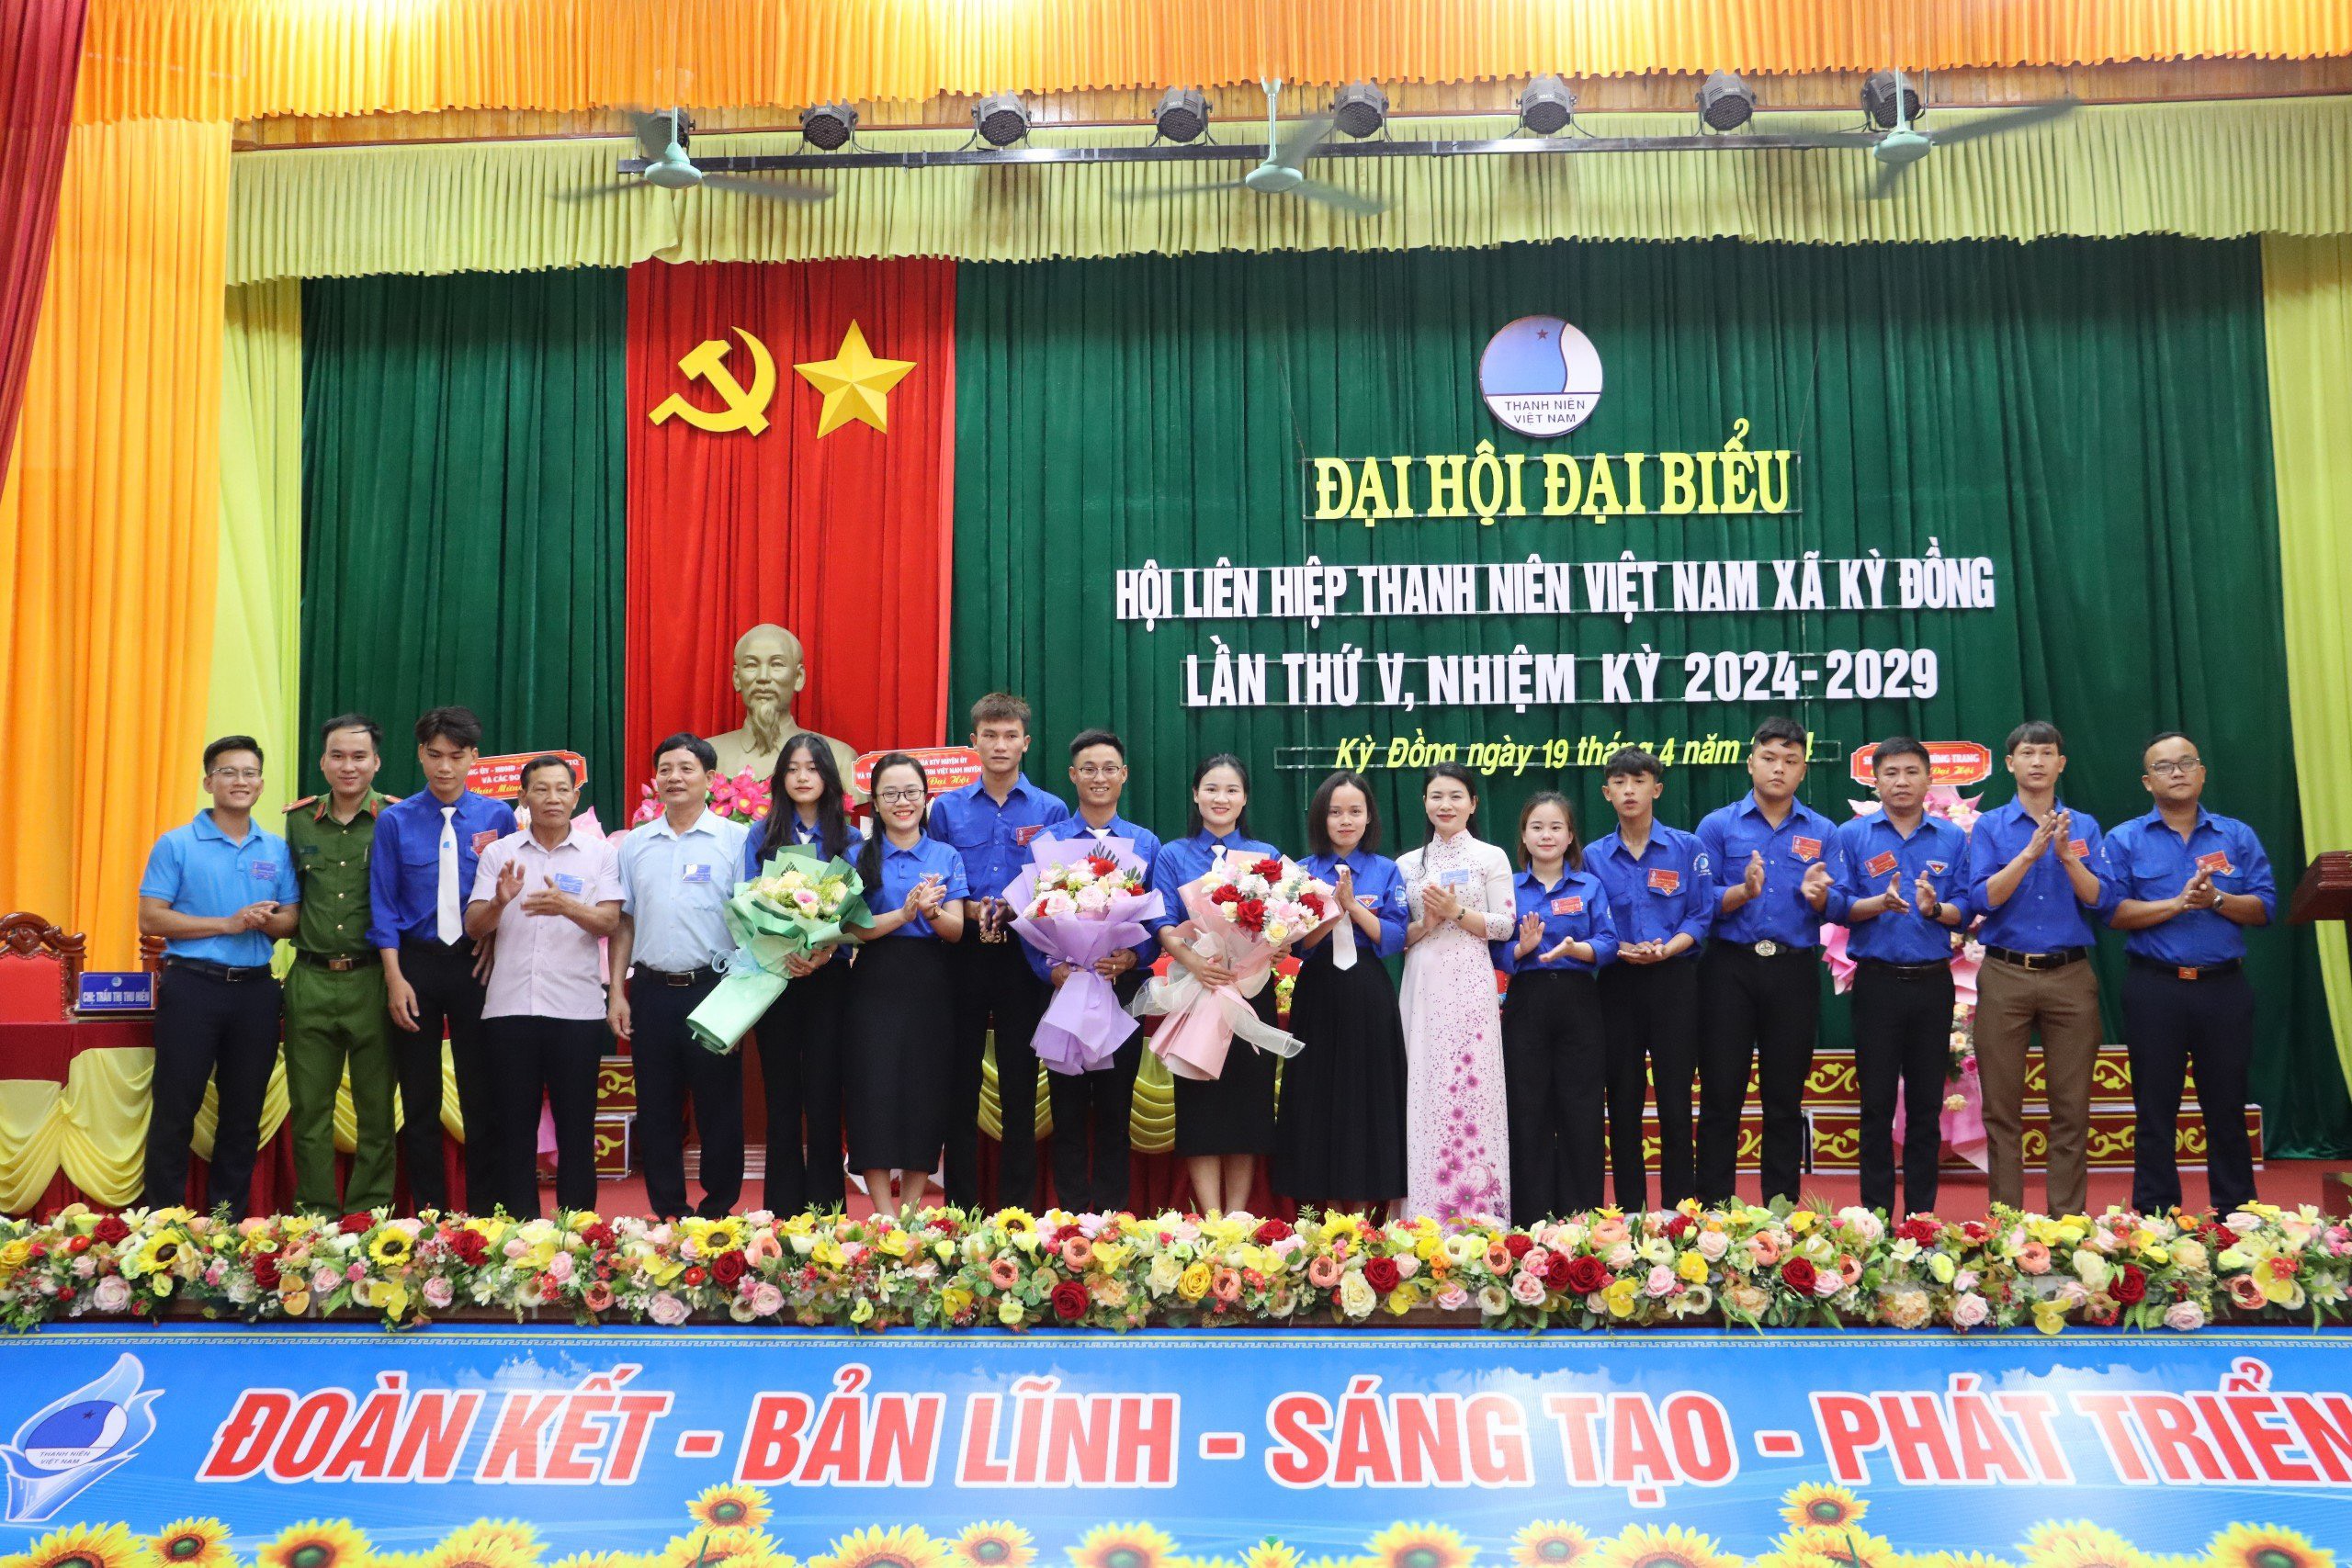 Đại hội đại biểu Hội LHTN Việt Nam xã Kỳ Đồng lần thứ V, nhiệm kỳ 2024-2029.